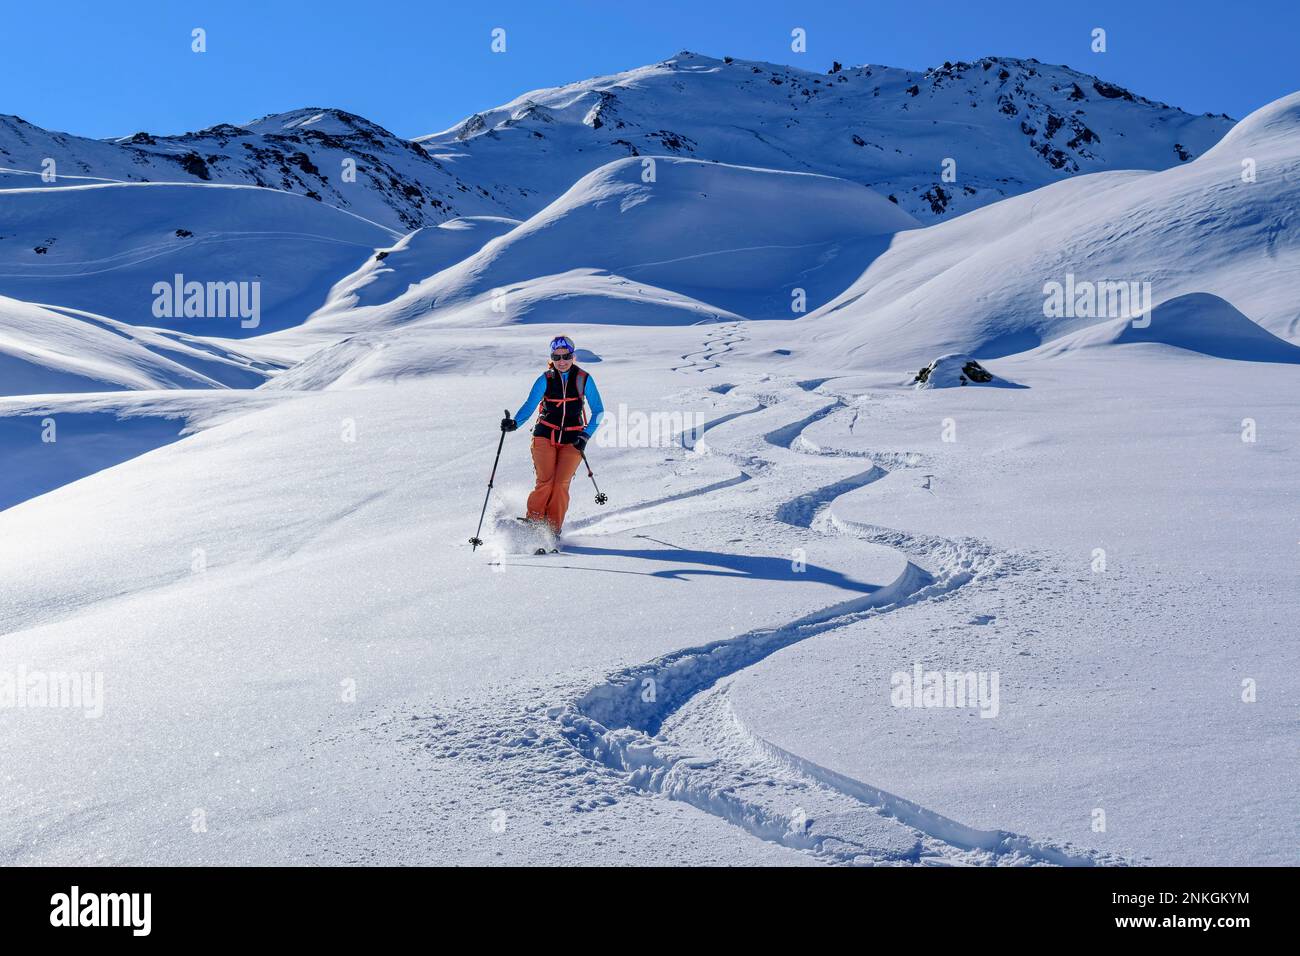 Girls Sliding Down Snowy Mountain On Stock Photo 244669624